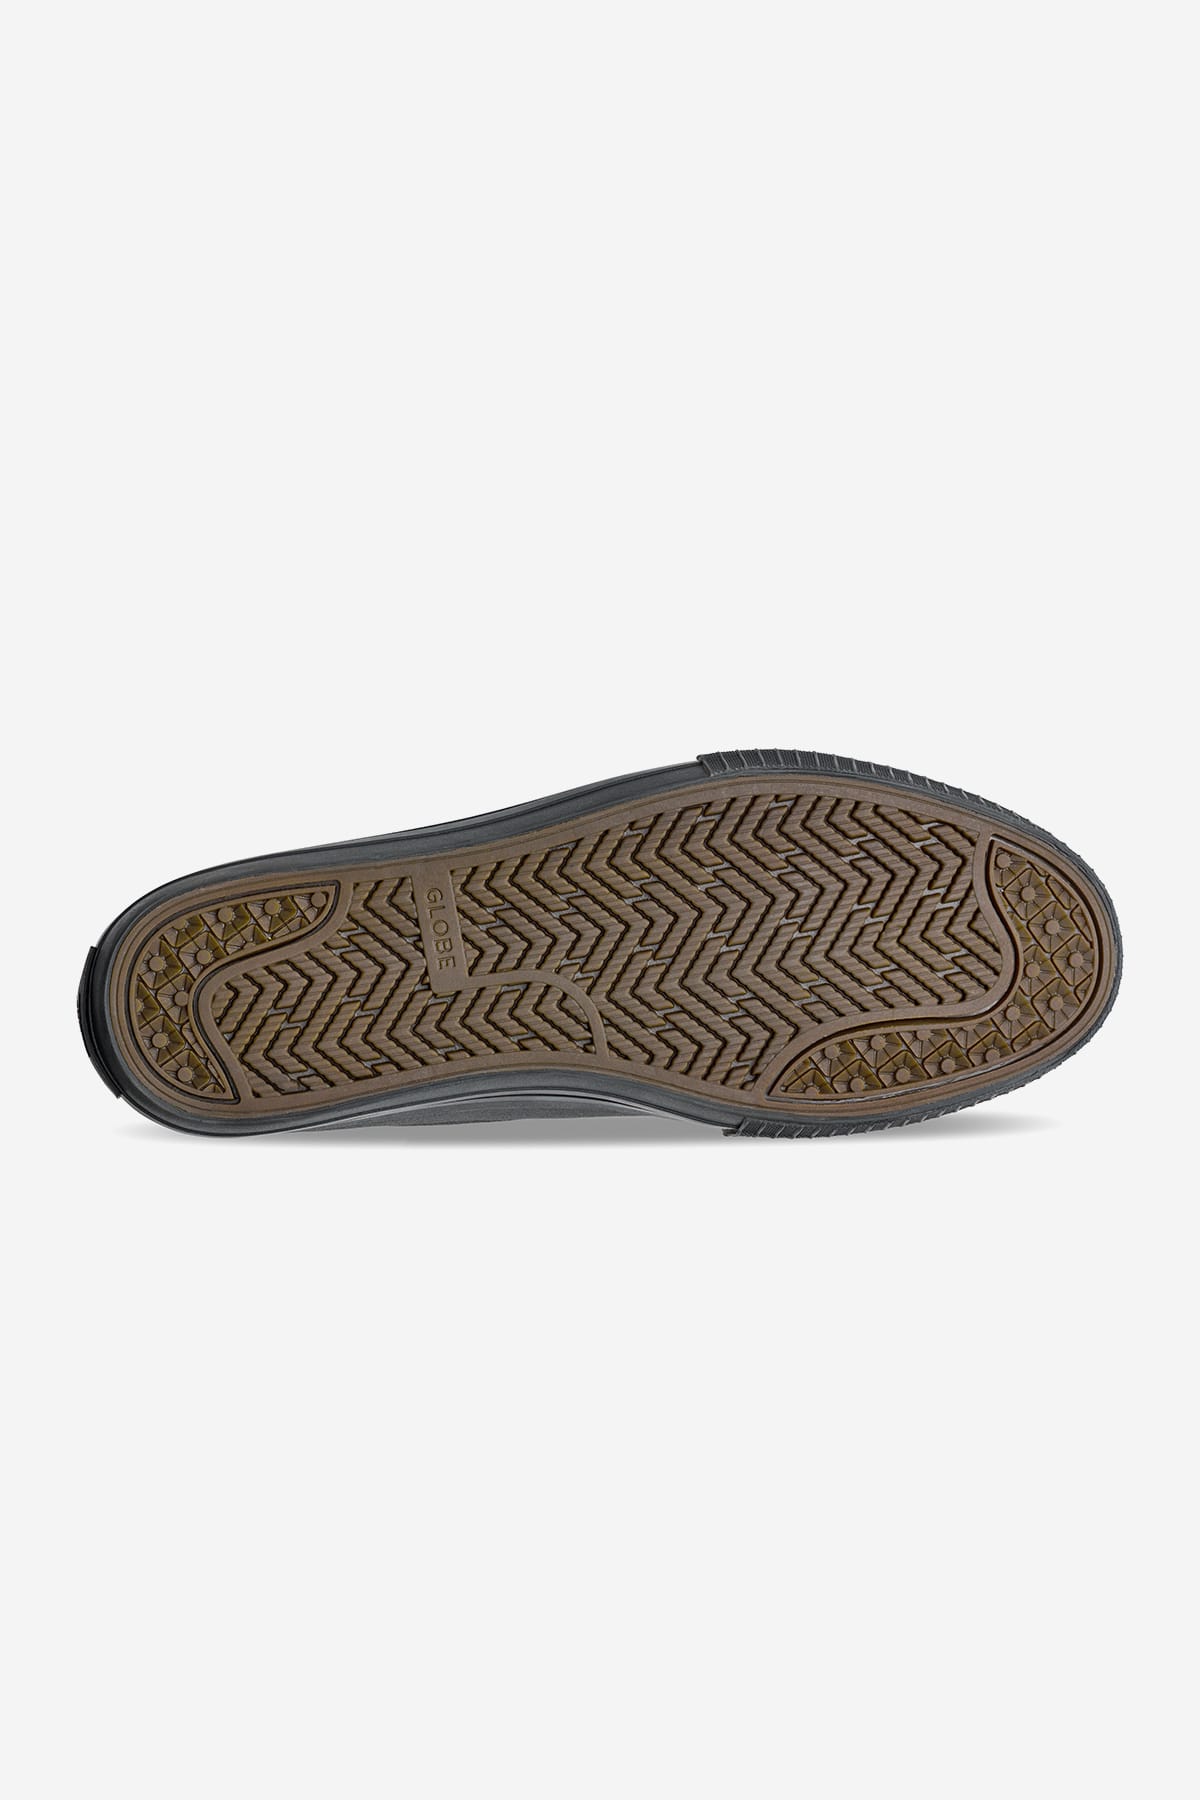 scarpe gillette in camoscio nero skateboard